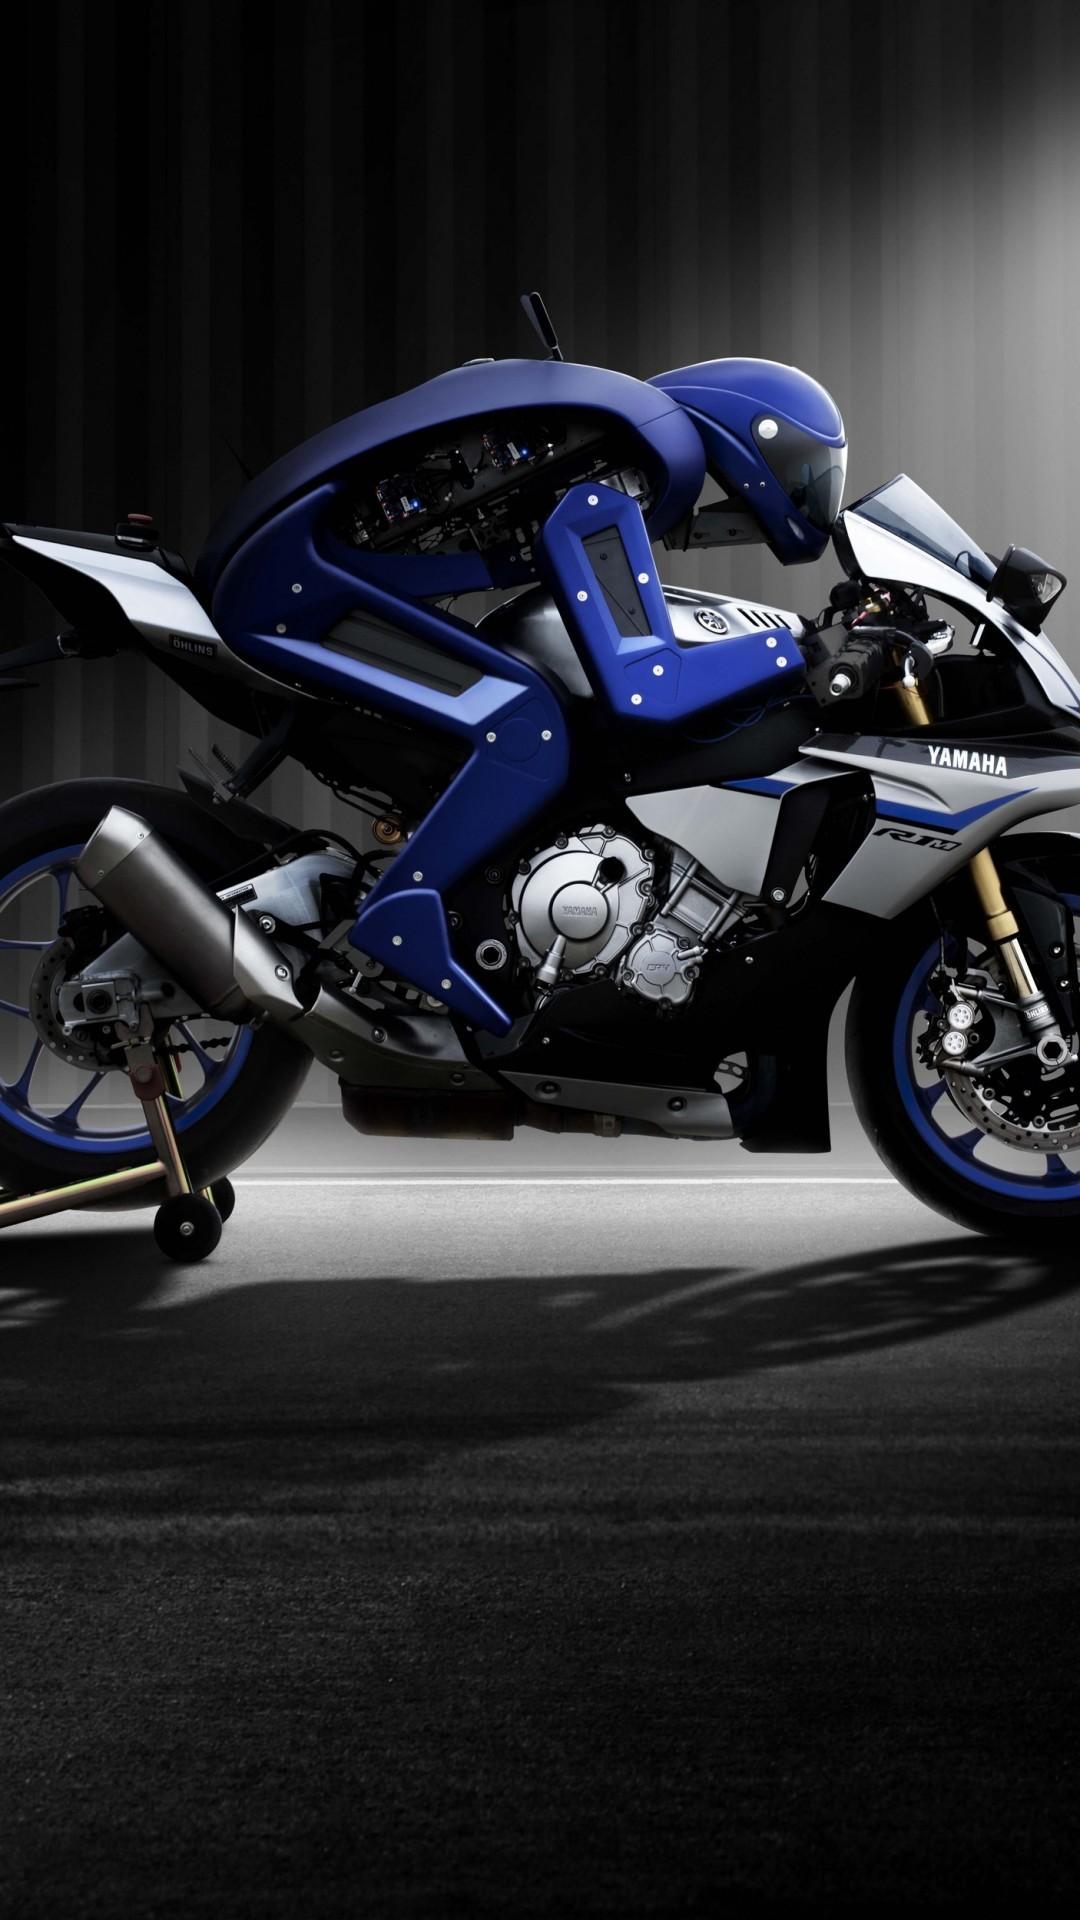 Download 1080x1920 Yamaha R1m Motobot, Side View, Motorcycle